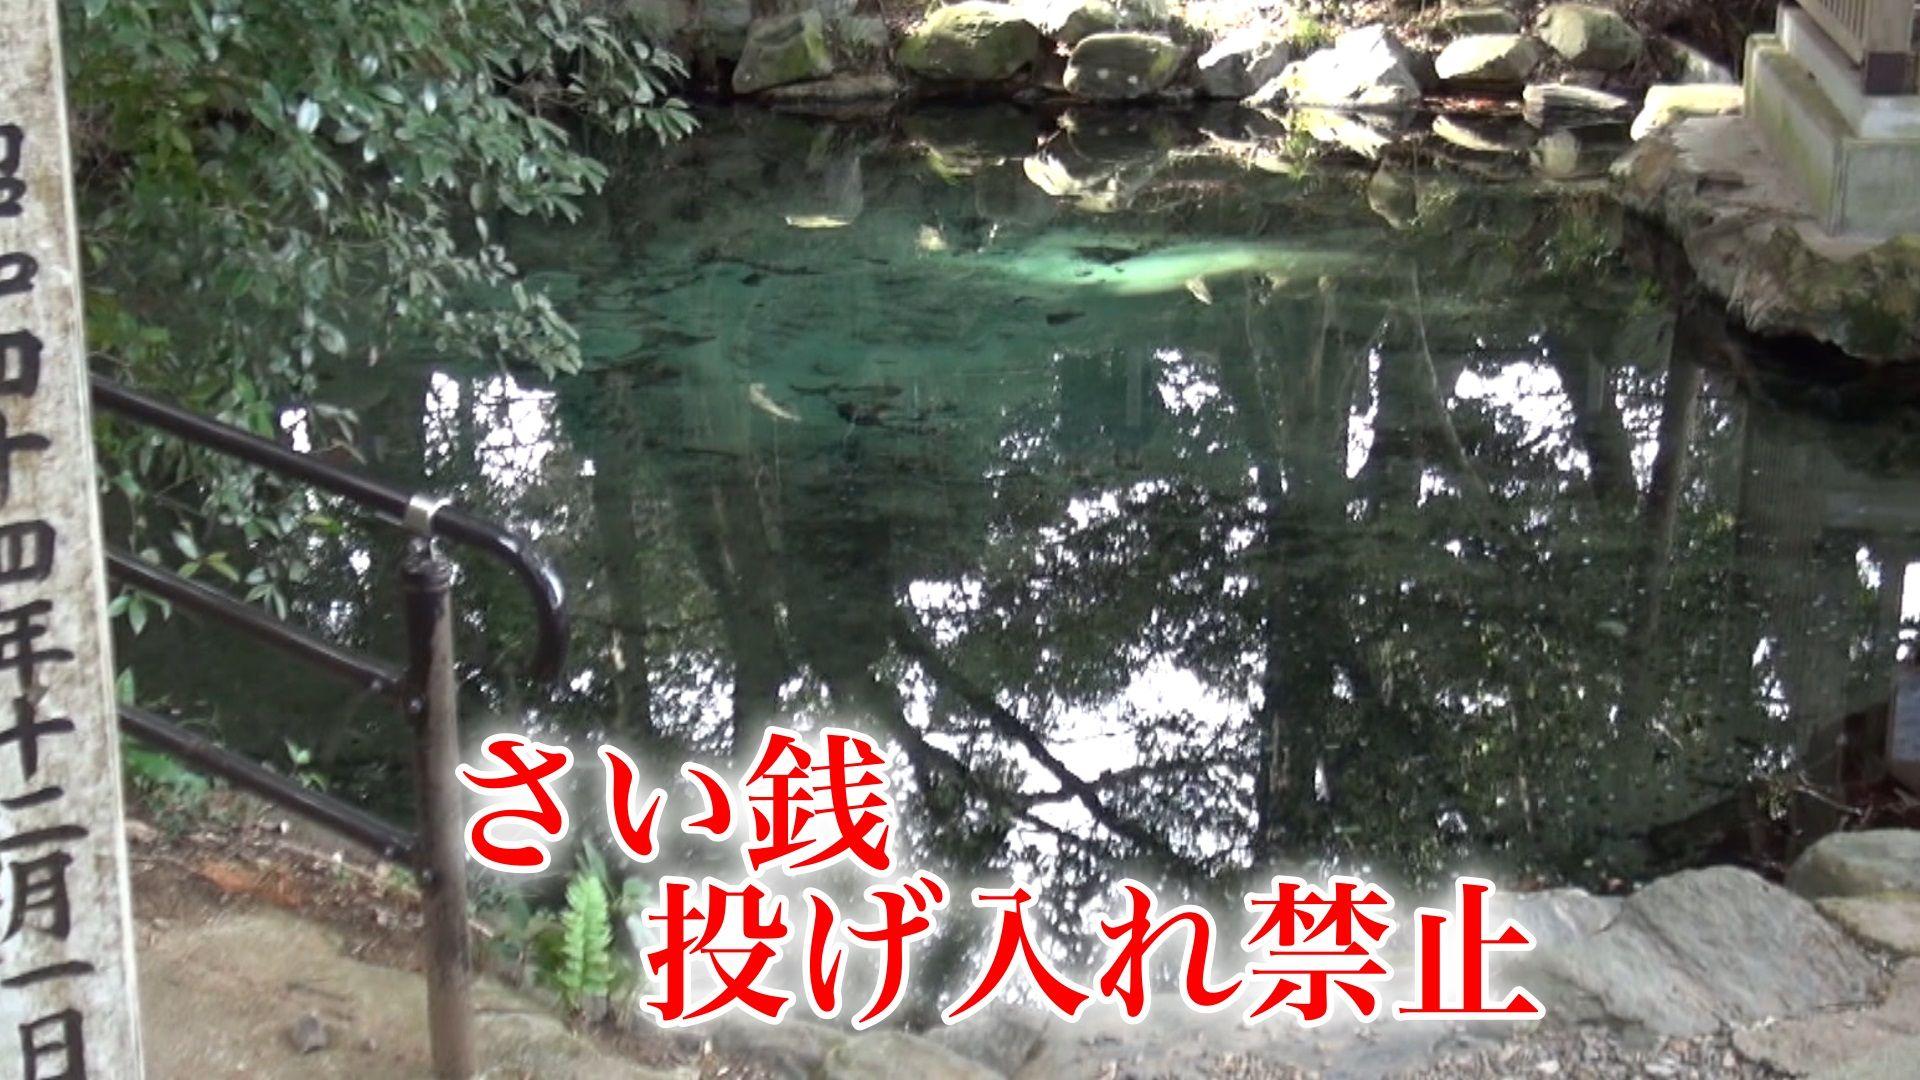 「さい銭投げないで！」泉龍木で有名な泉神社が注意喚起… “平成の名水百選”の水質悪化を懸念